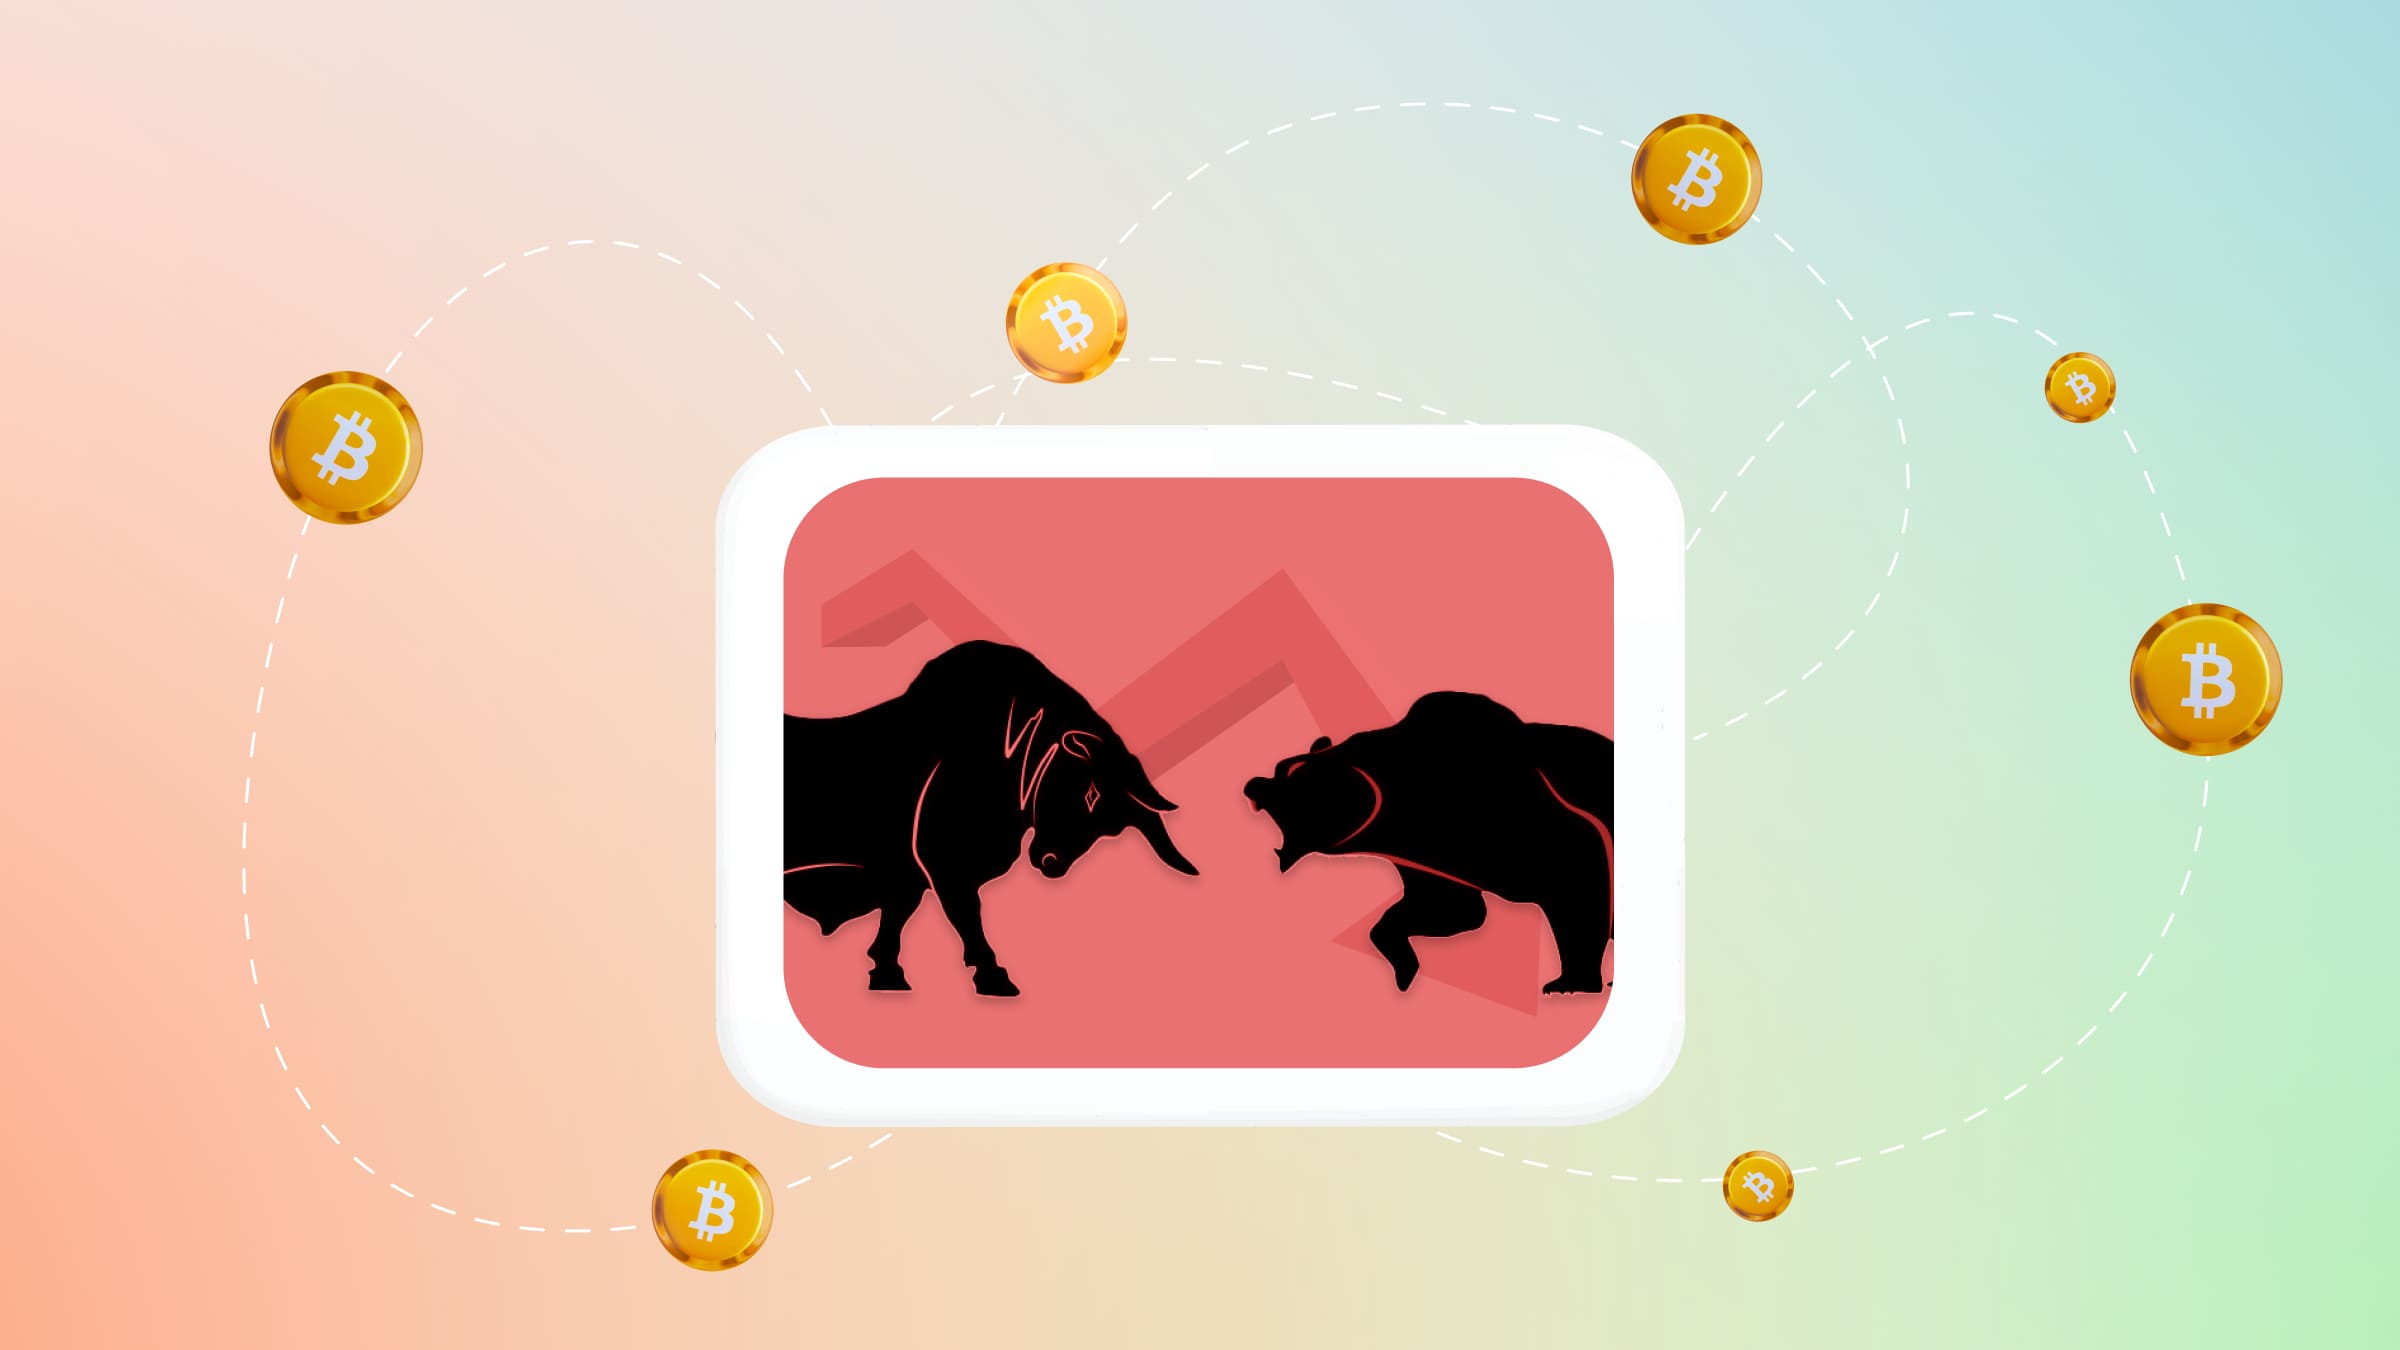 При медвежьем тренде на рынке происходит снижение стоимости криптовалют, а при бычьем — рост.